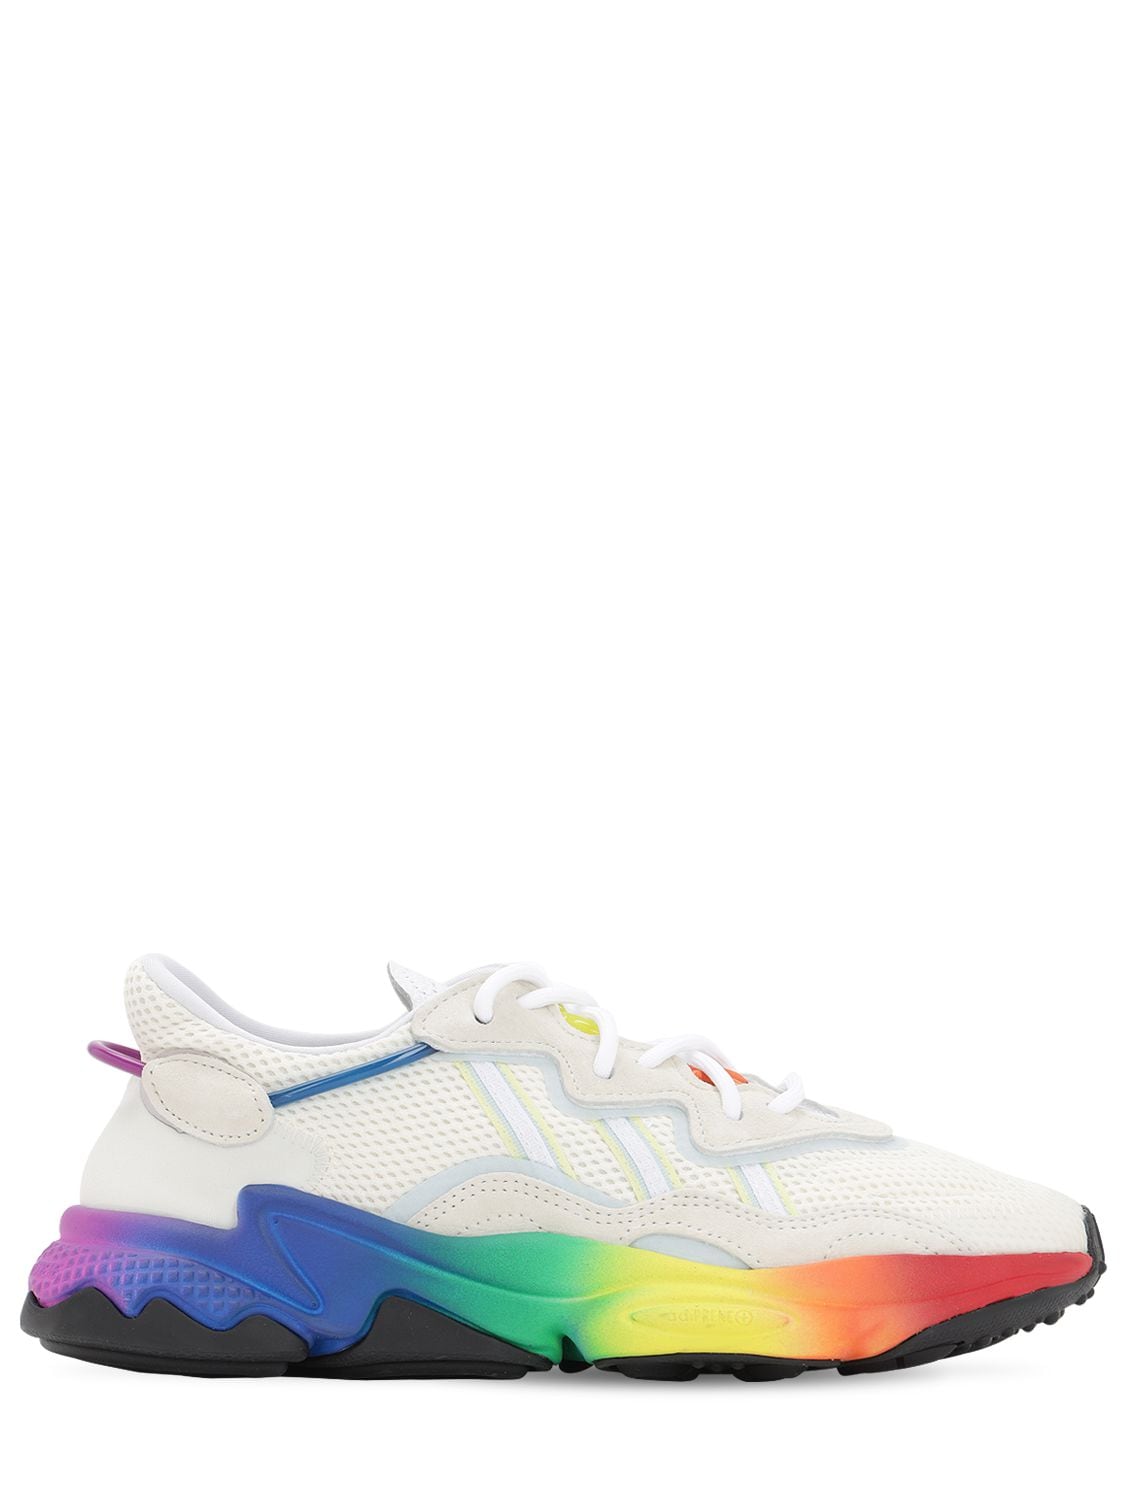 adidas Originals - Ozweego pride sneakers - White/Multi | Luisaviaroma